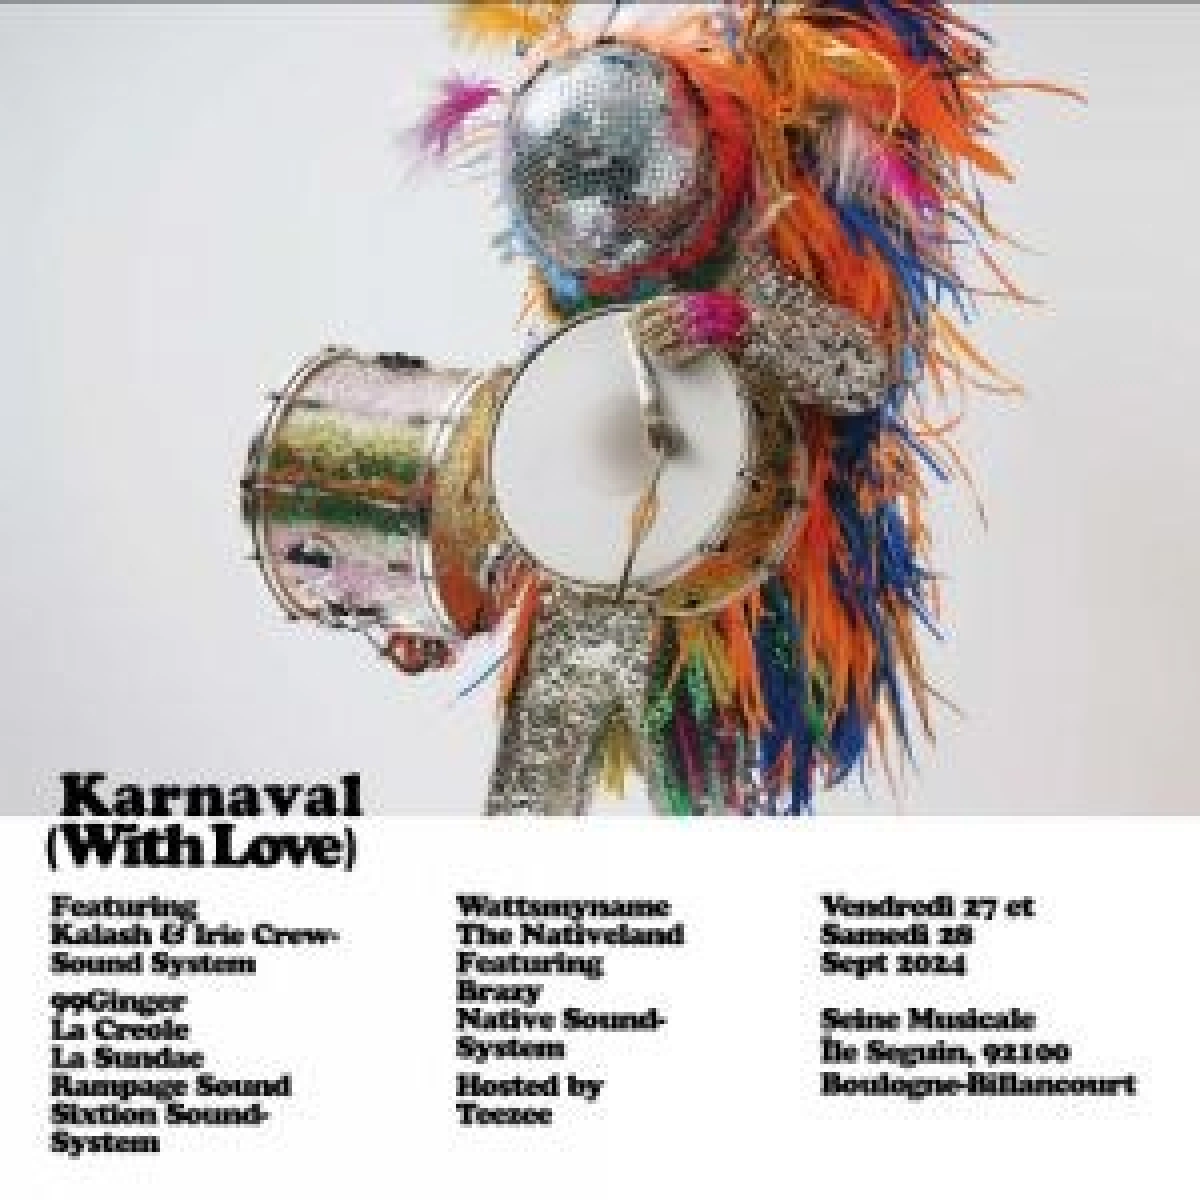 Karnaval en La Seine Musicale Tickets